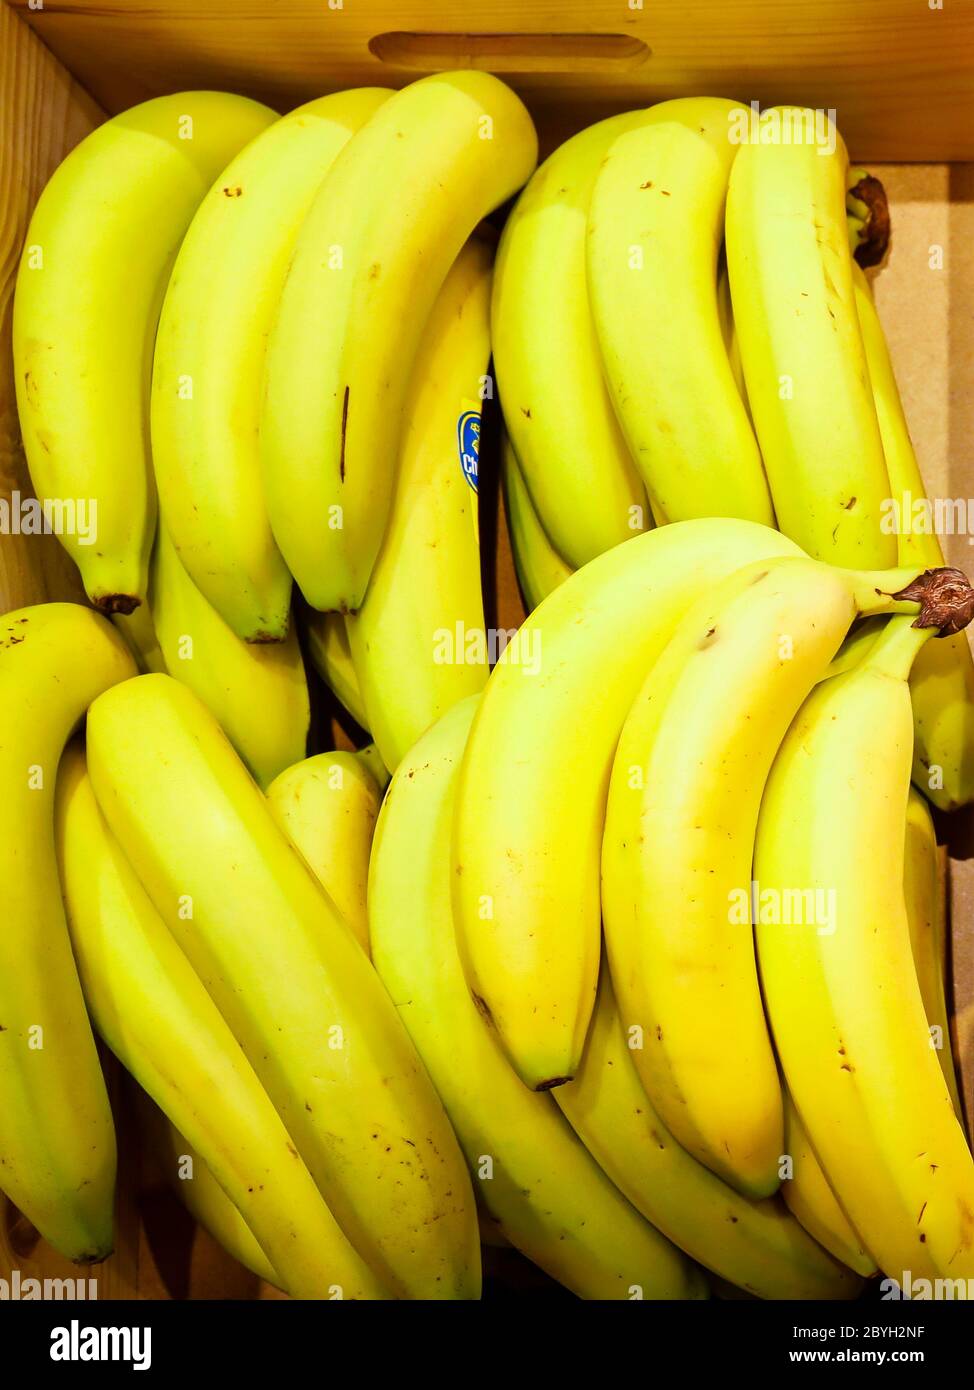 Germany - bananas lie in a wooden box. Deutschland - Bananen liegen in einer Holzkiste. Stock Photo